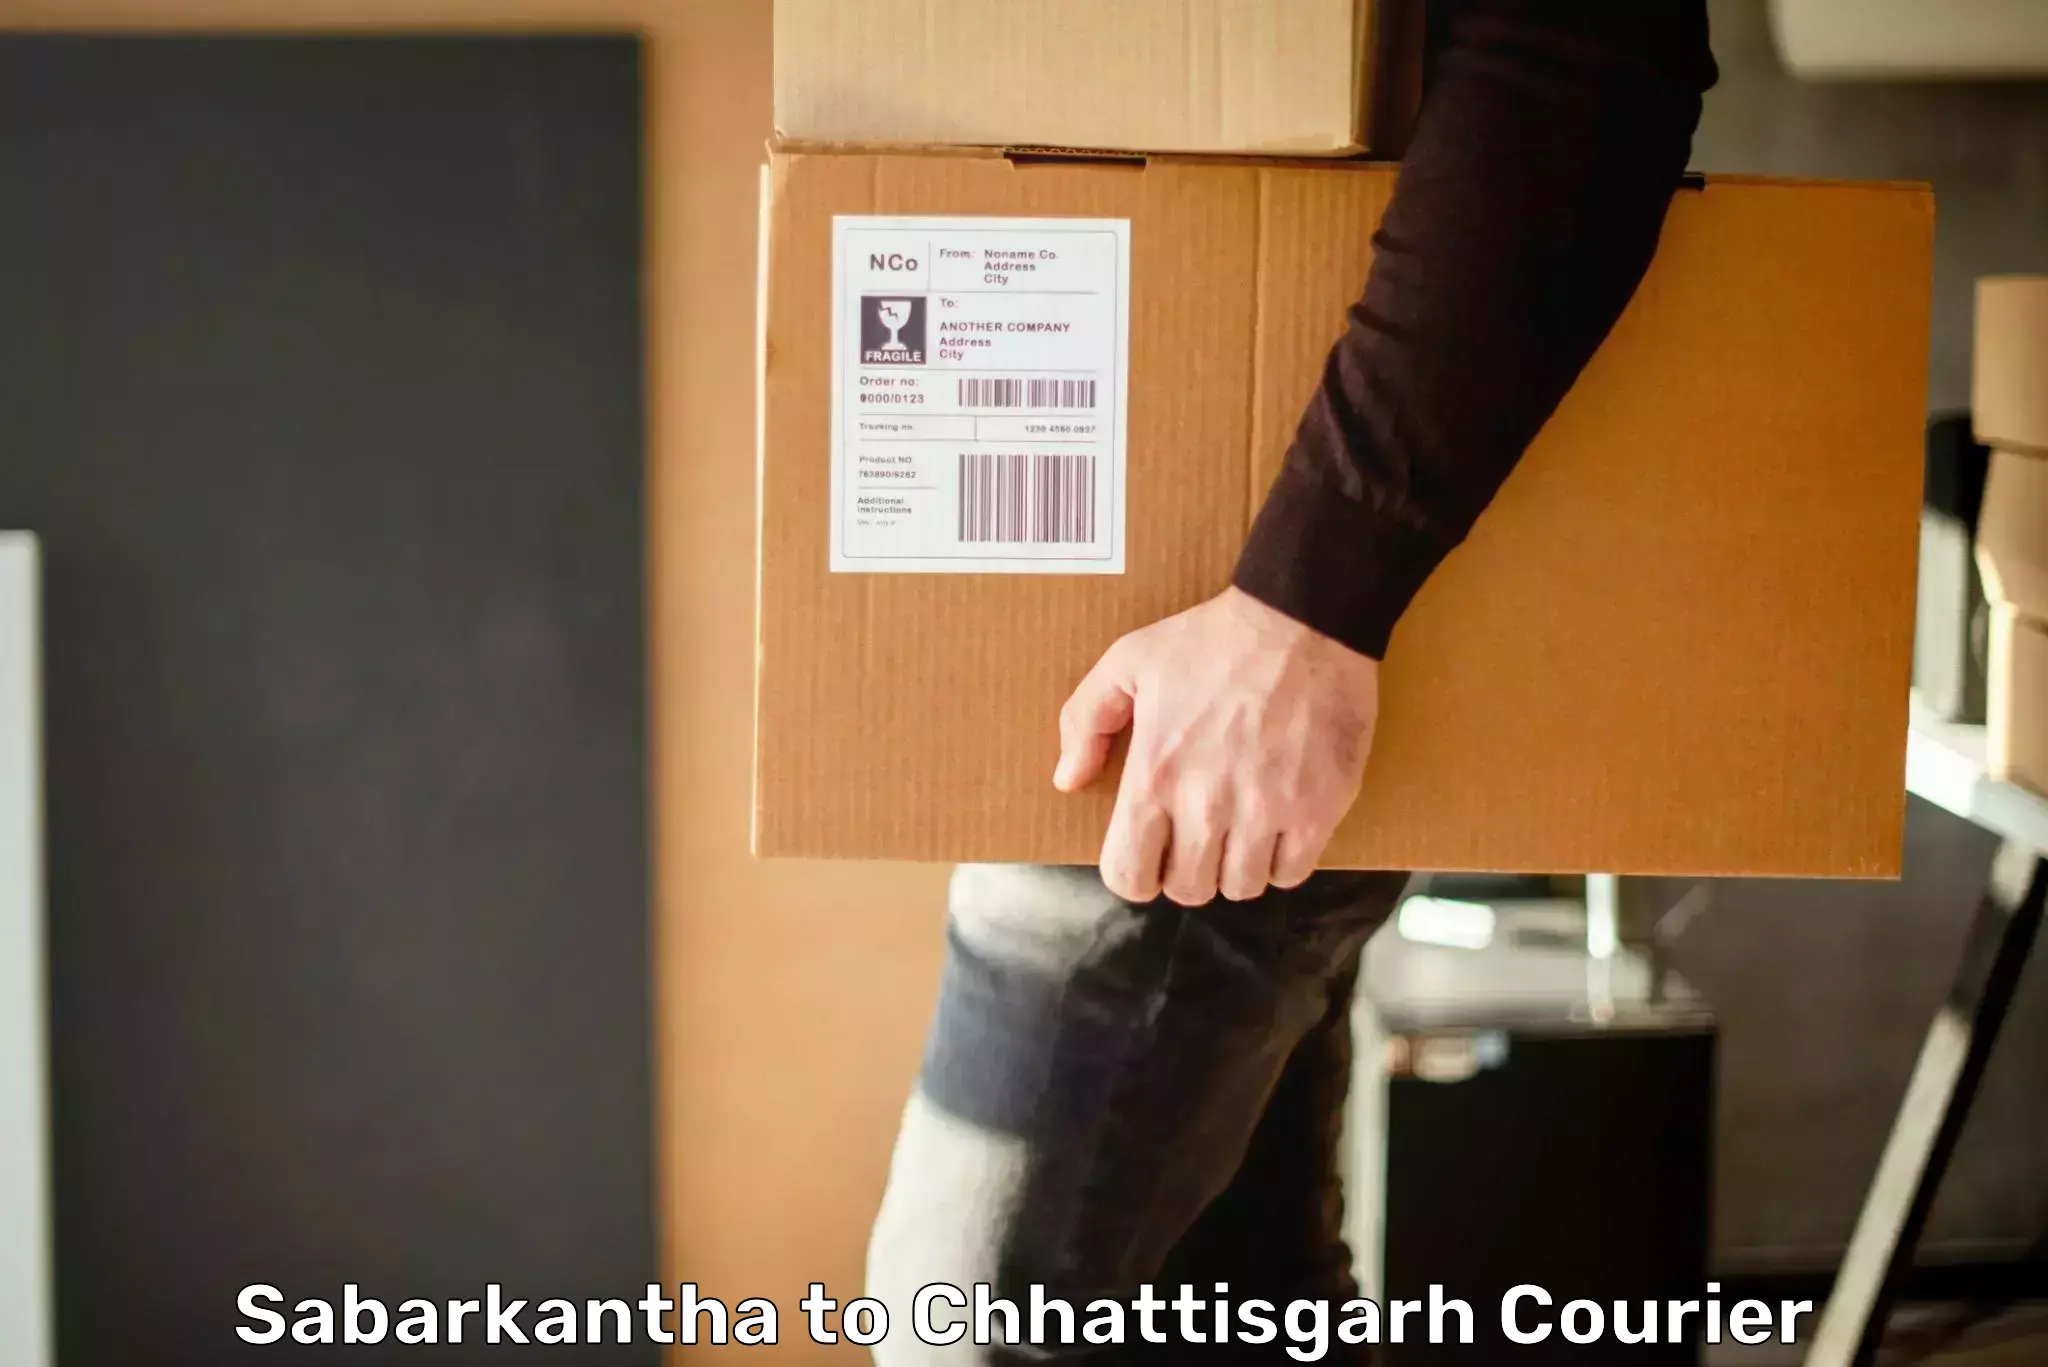 Efficient cargo handling in Sabarkantha to Raigarh Chhattisgarh